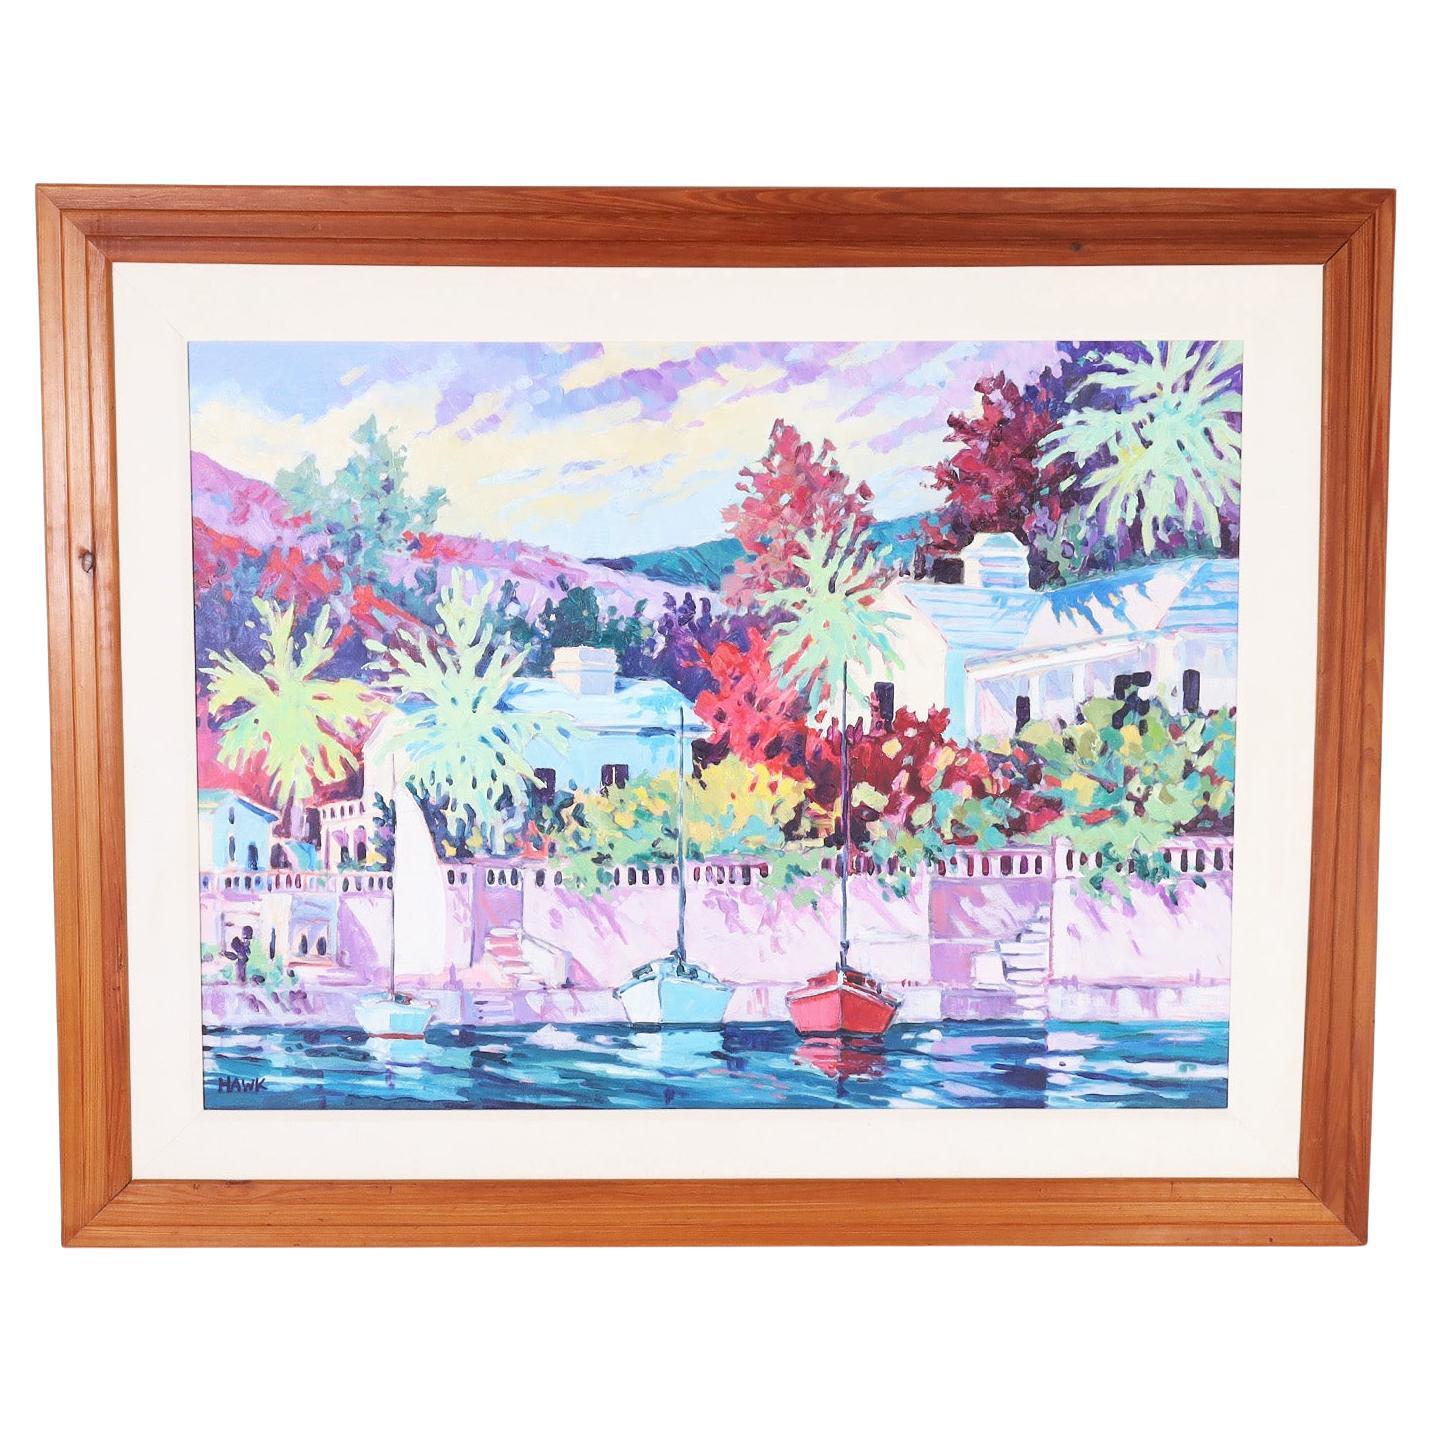 Gemälde auf Leinwand mit einer tropischen Szene